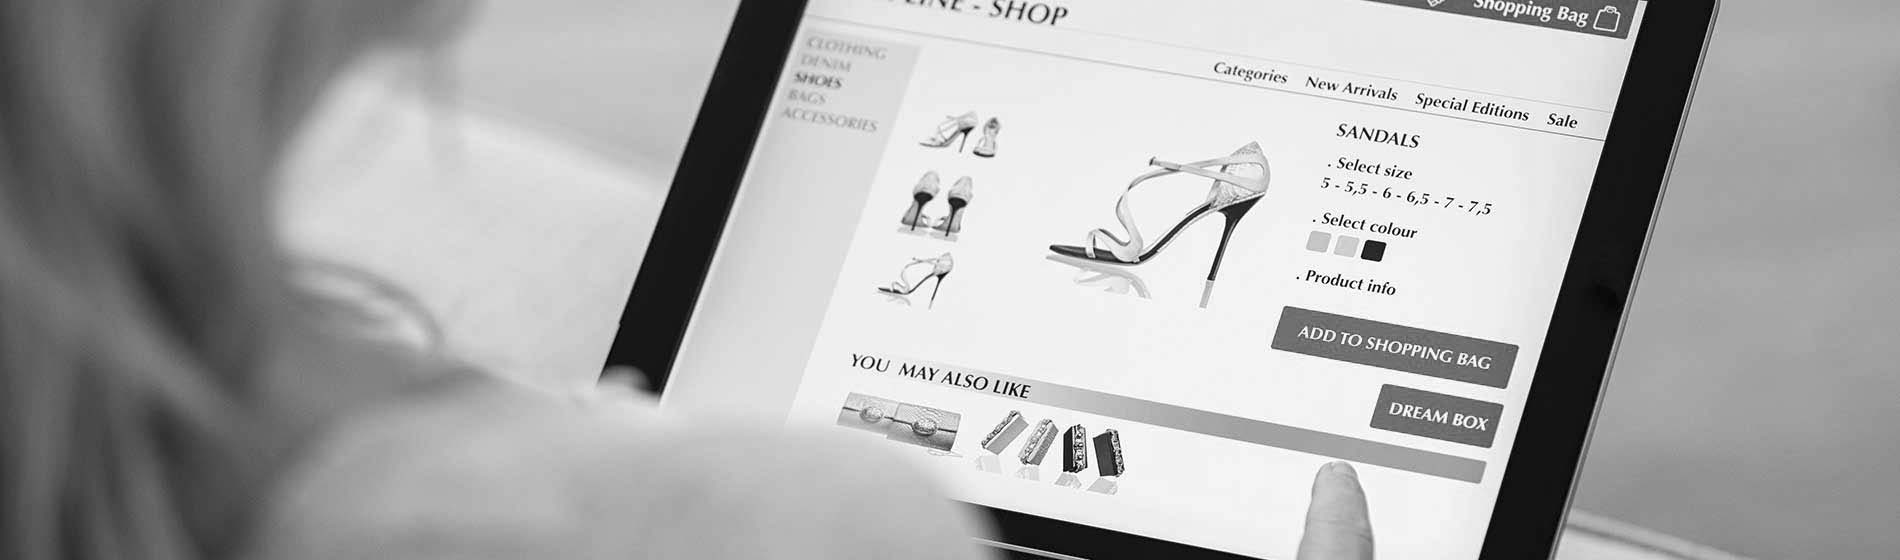 site web e-commerce 31 Haute-Garonne